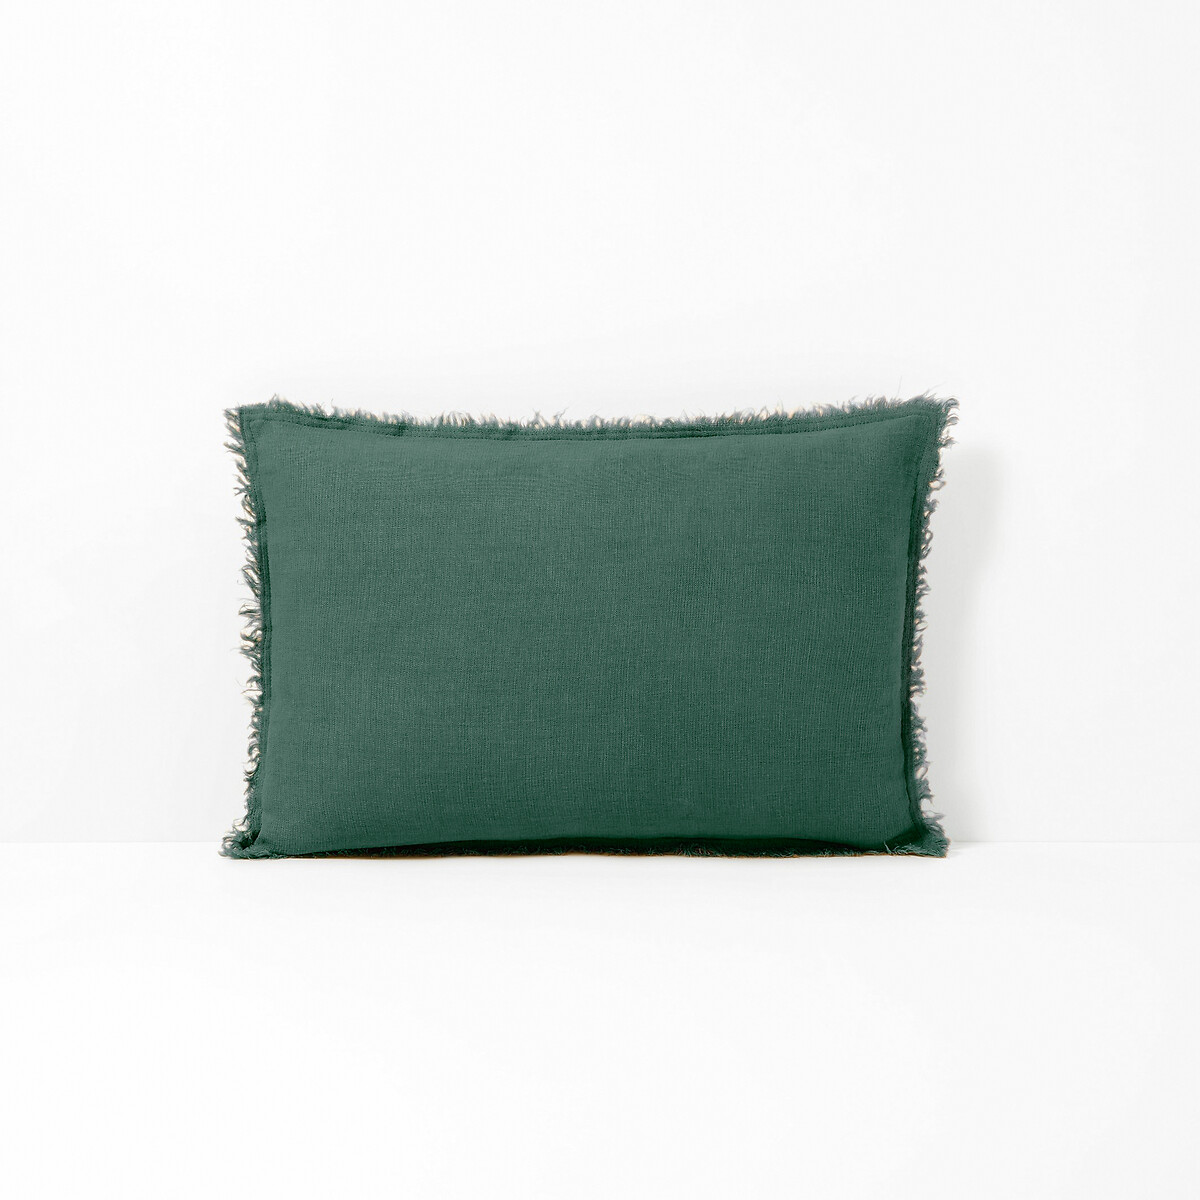 Чехол LaRedoute На подушку 100 лен Linange 50 x 50 см зеленый, размер 50 x 50 см - фото 3